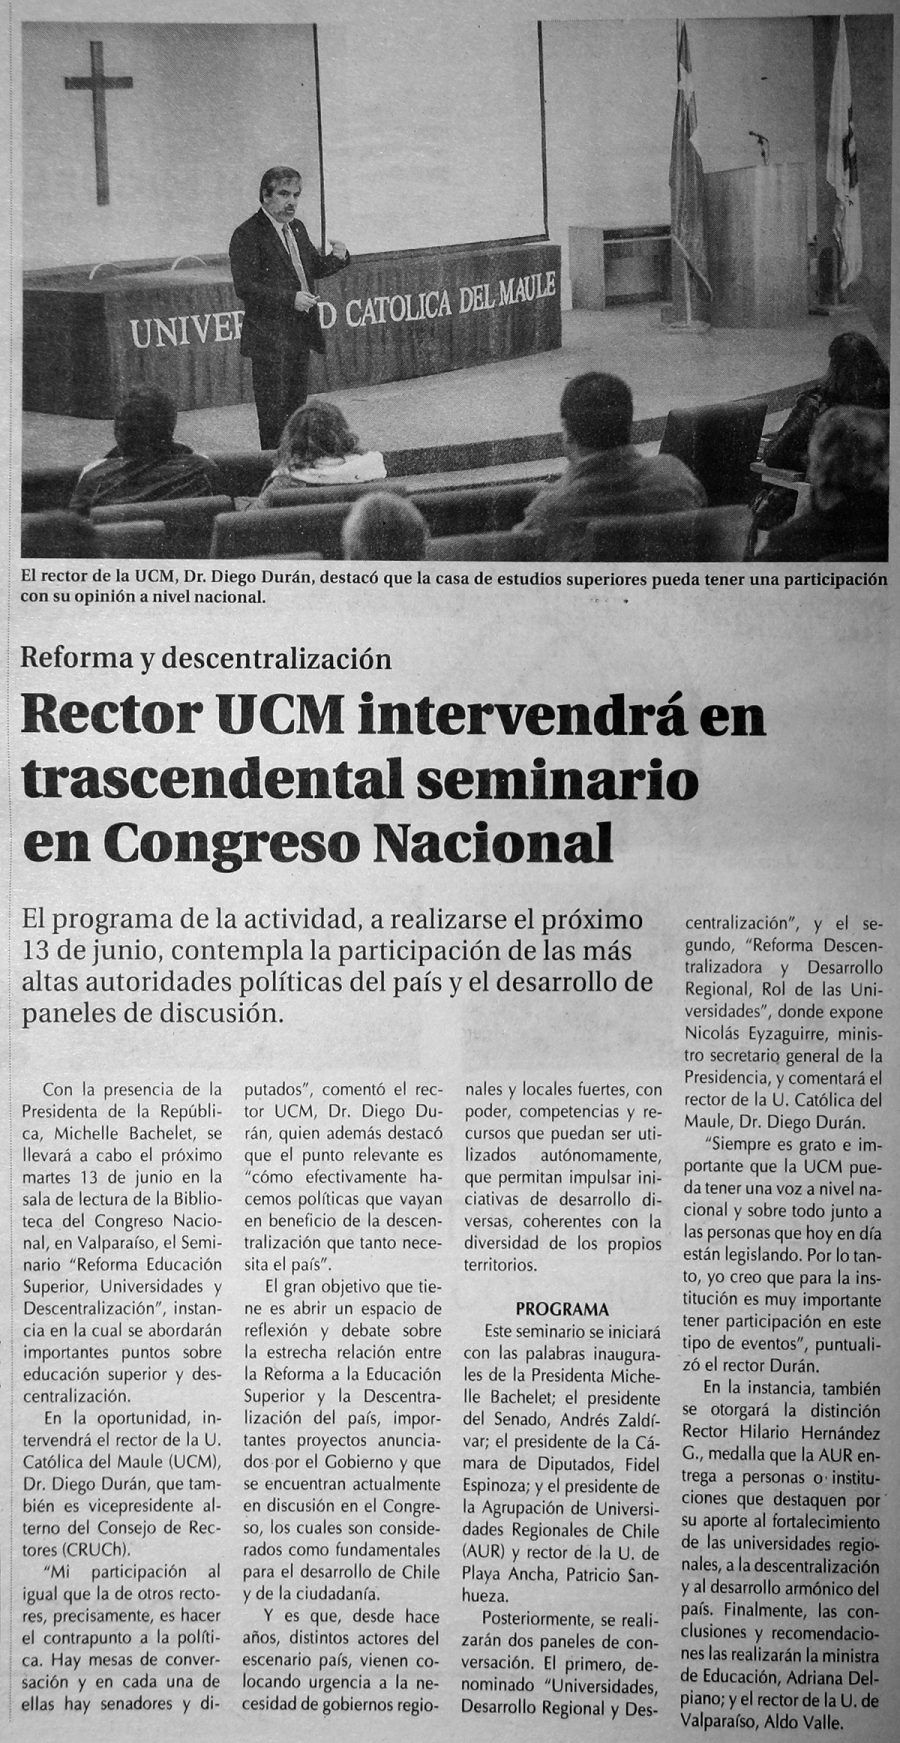 04 de junio en Diario El Centro: “Rector UCM intervendrá en trascendental seminario en Congreso Nacional”